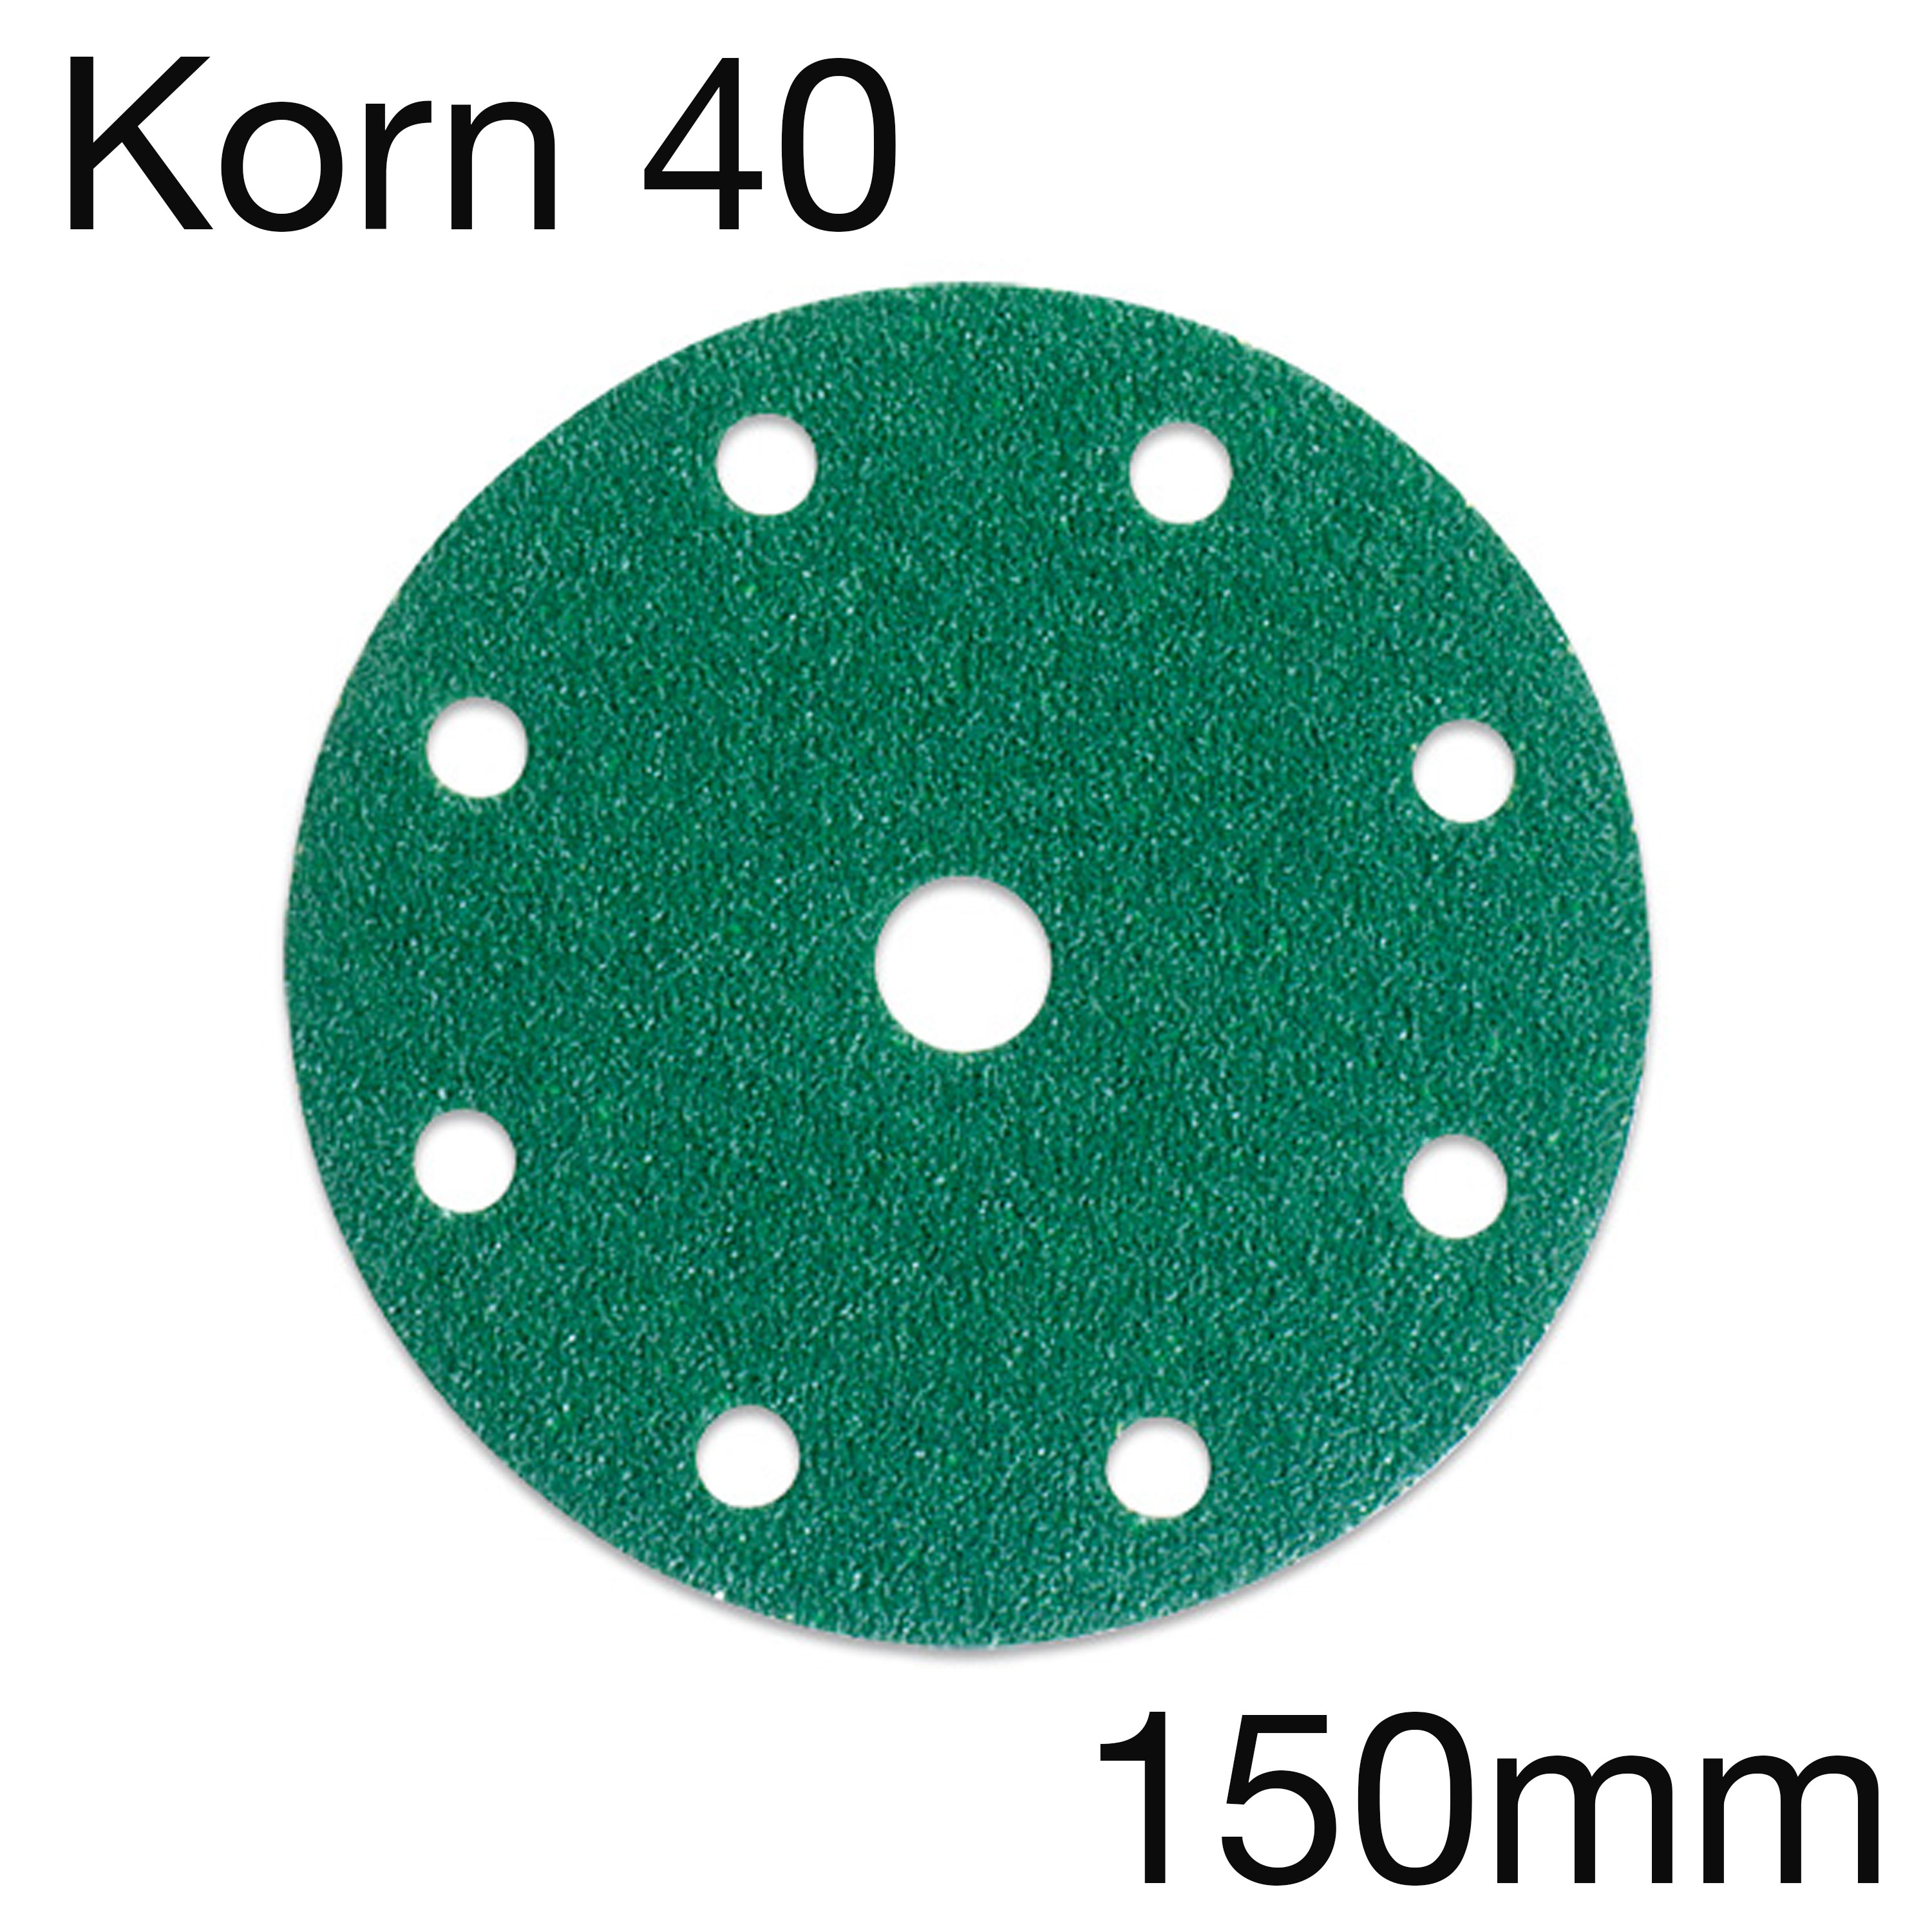 3M 245 00317 Hookit Papierschleifscheibe, 9-Loch, Korn 40, 150mm, Pack mit 50 Stk